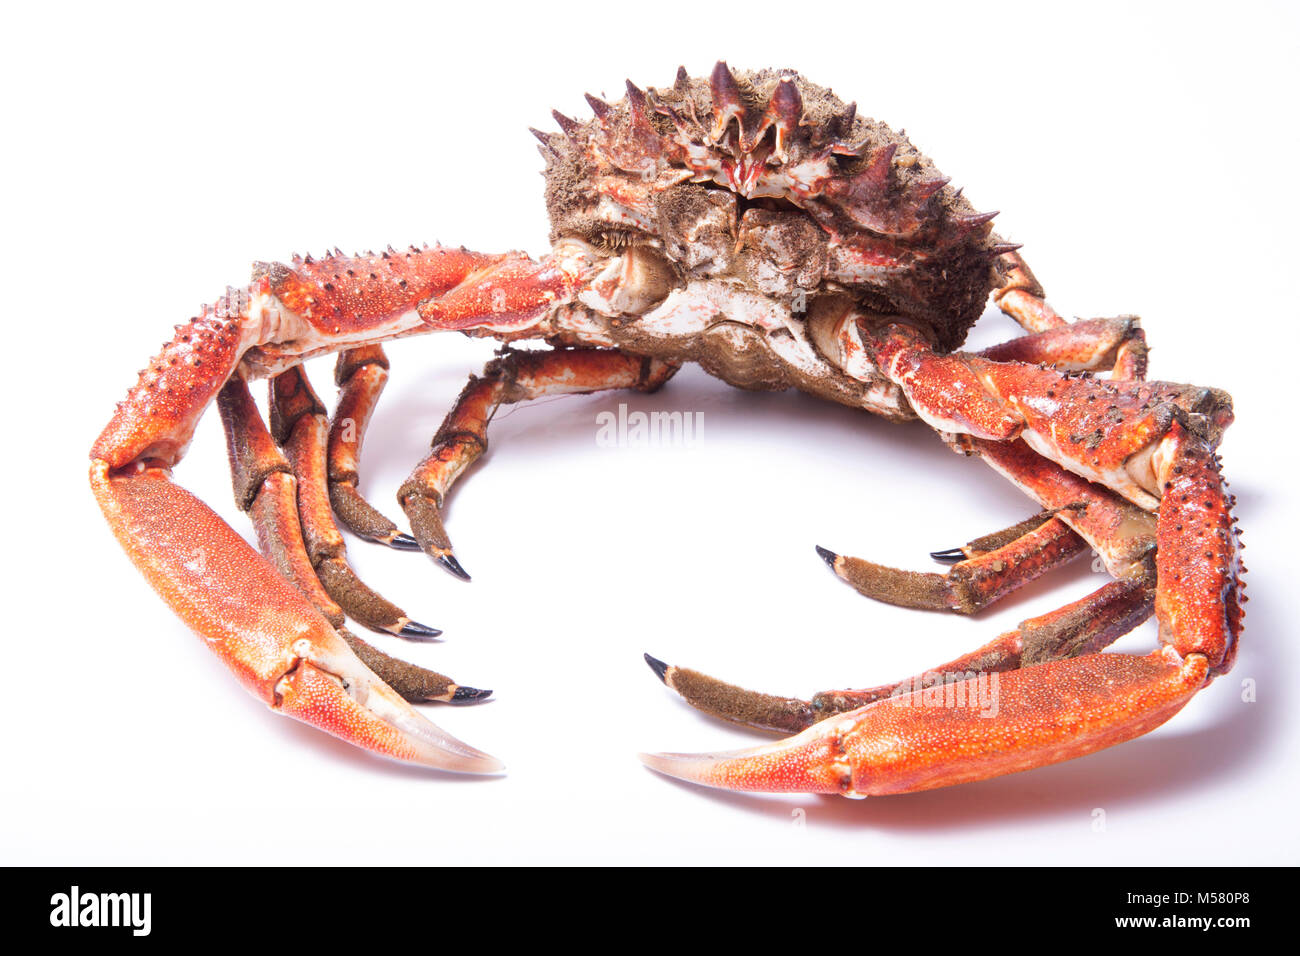 Ein roher, ungekockter männlicher Spider Crab, Maja squinado, gefangen in Dorset England GB mit einem Fallnetz, das von einem Pier gefischt wurde. Weißer Hintergrund. Stockfoto